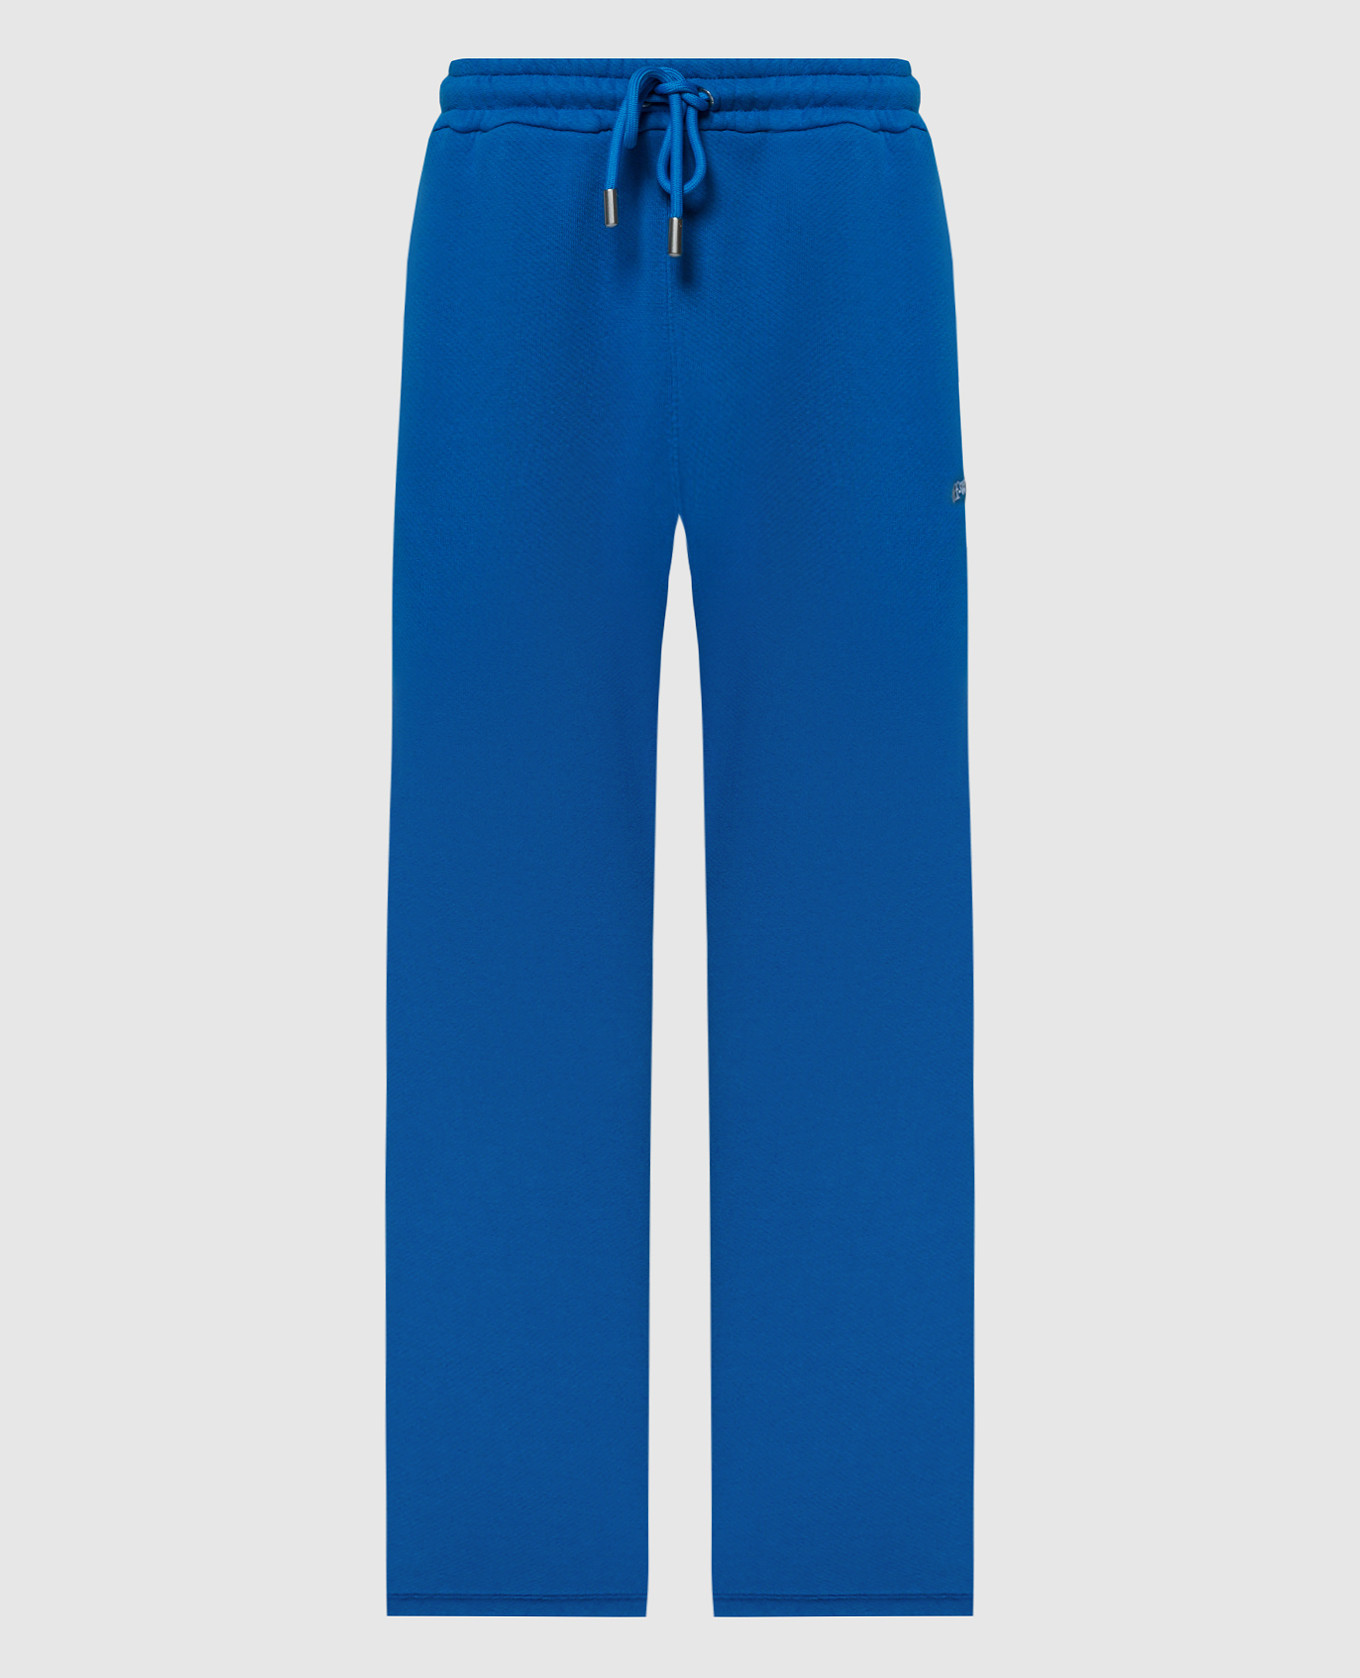 Blue sweatpants with Bandana Arrow embroidery